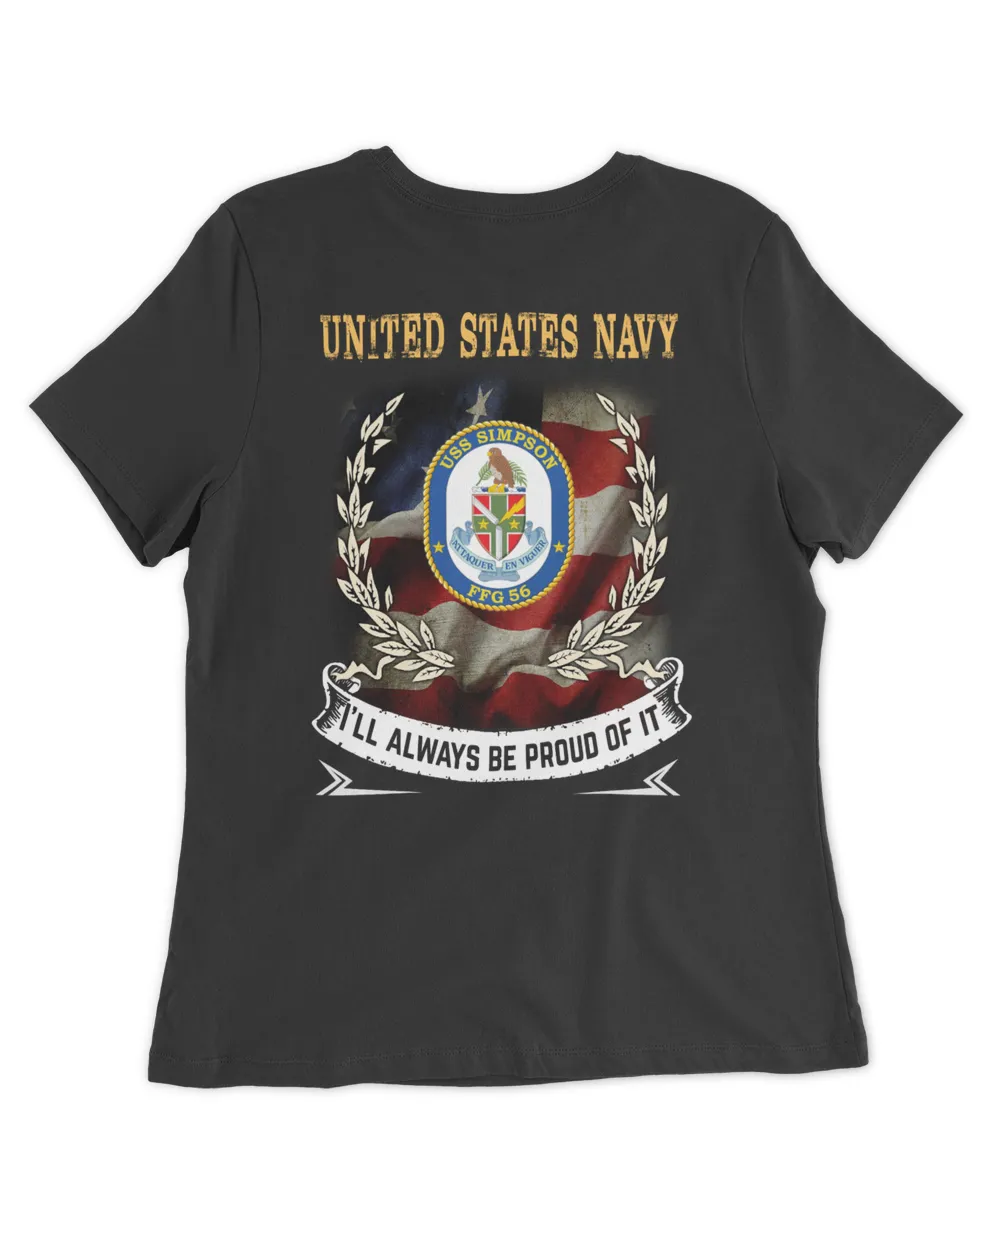 USS Simpson (FFG-56)-1 Tshirt